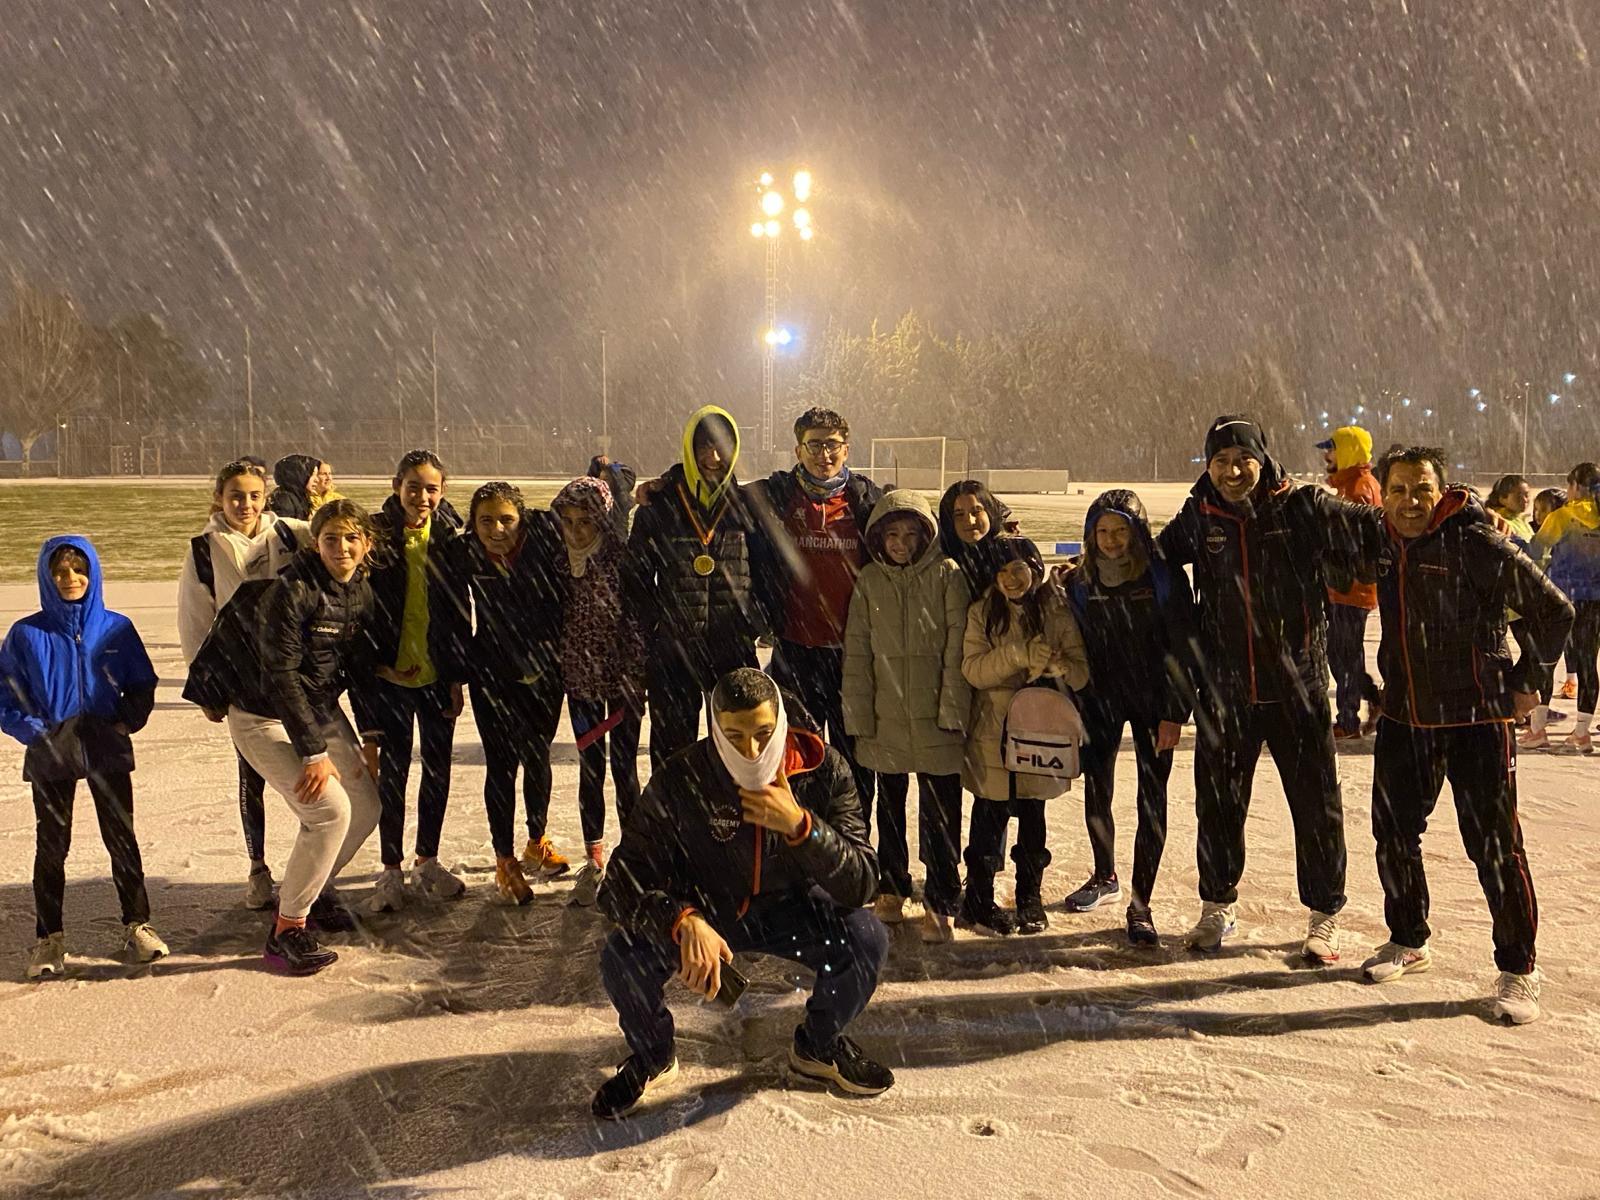 Increíble jornada de la Manchathon Academy en el Campeonato Provincial de Pista a pesar de la nevada